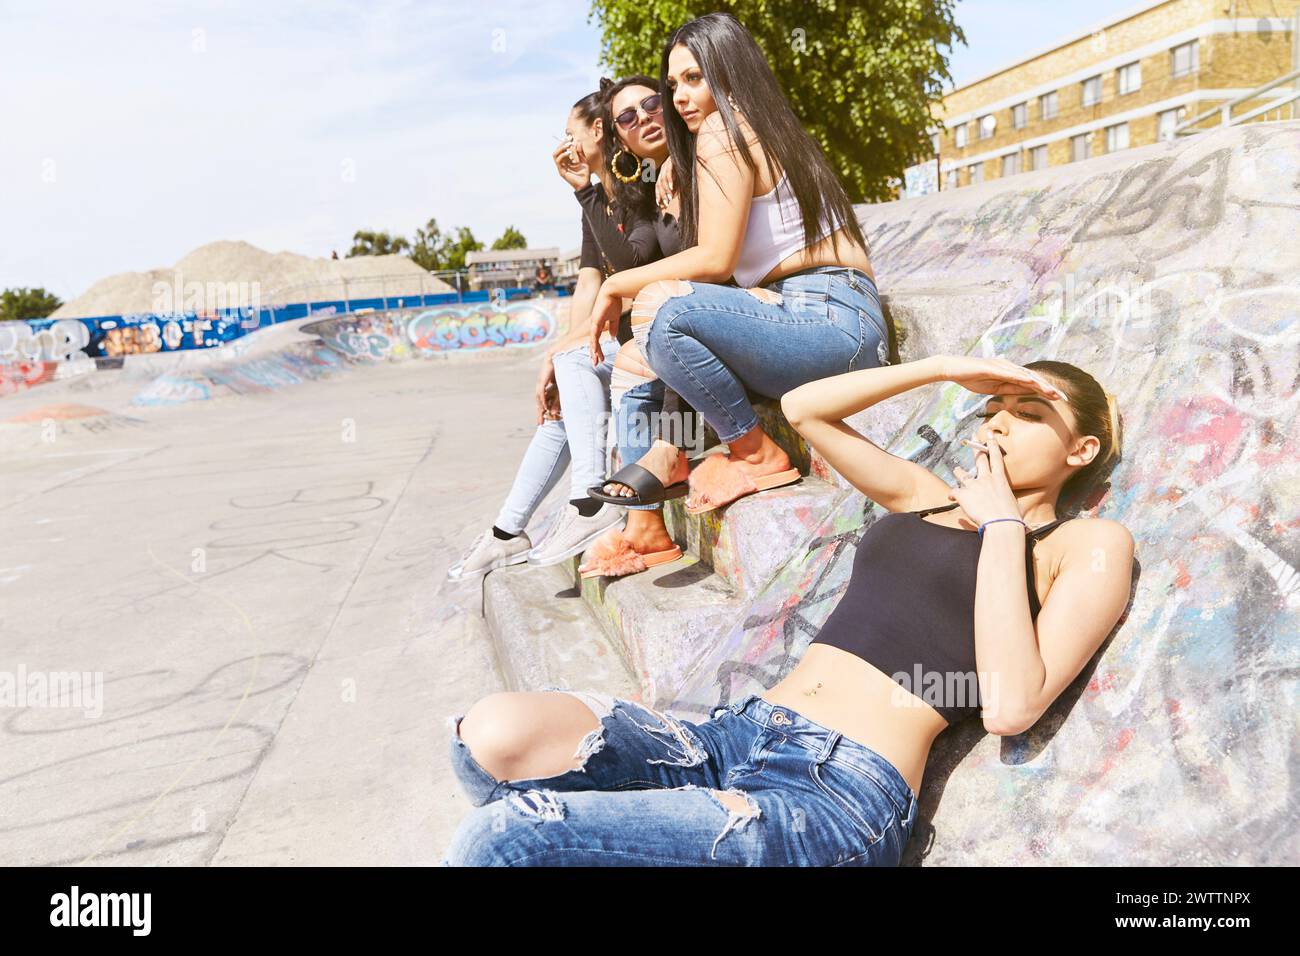 Freunde hängen in einem Graffiti-bedeckten Skatepark ab Stockfoto